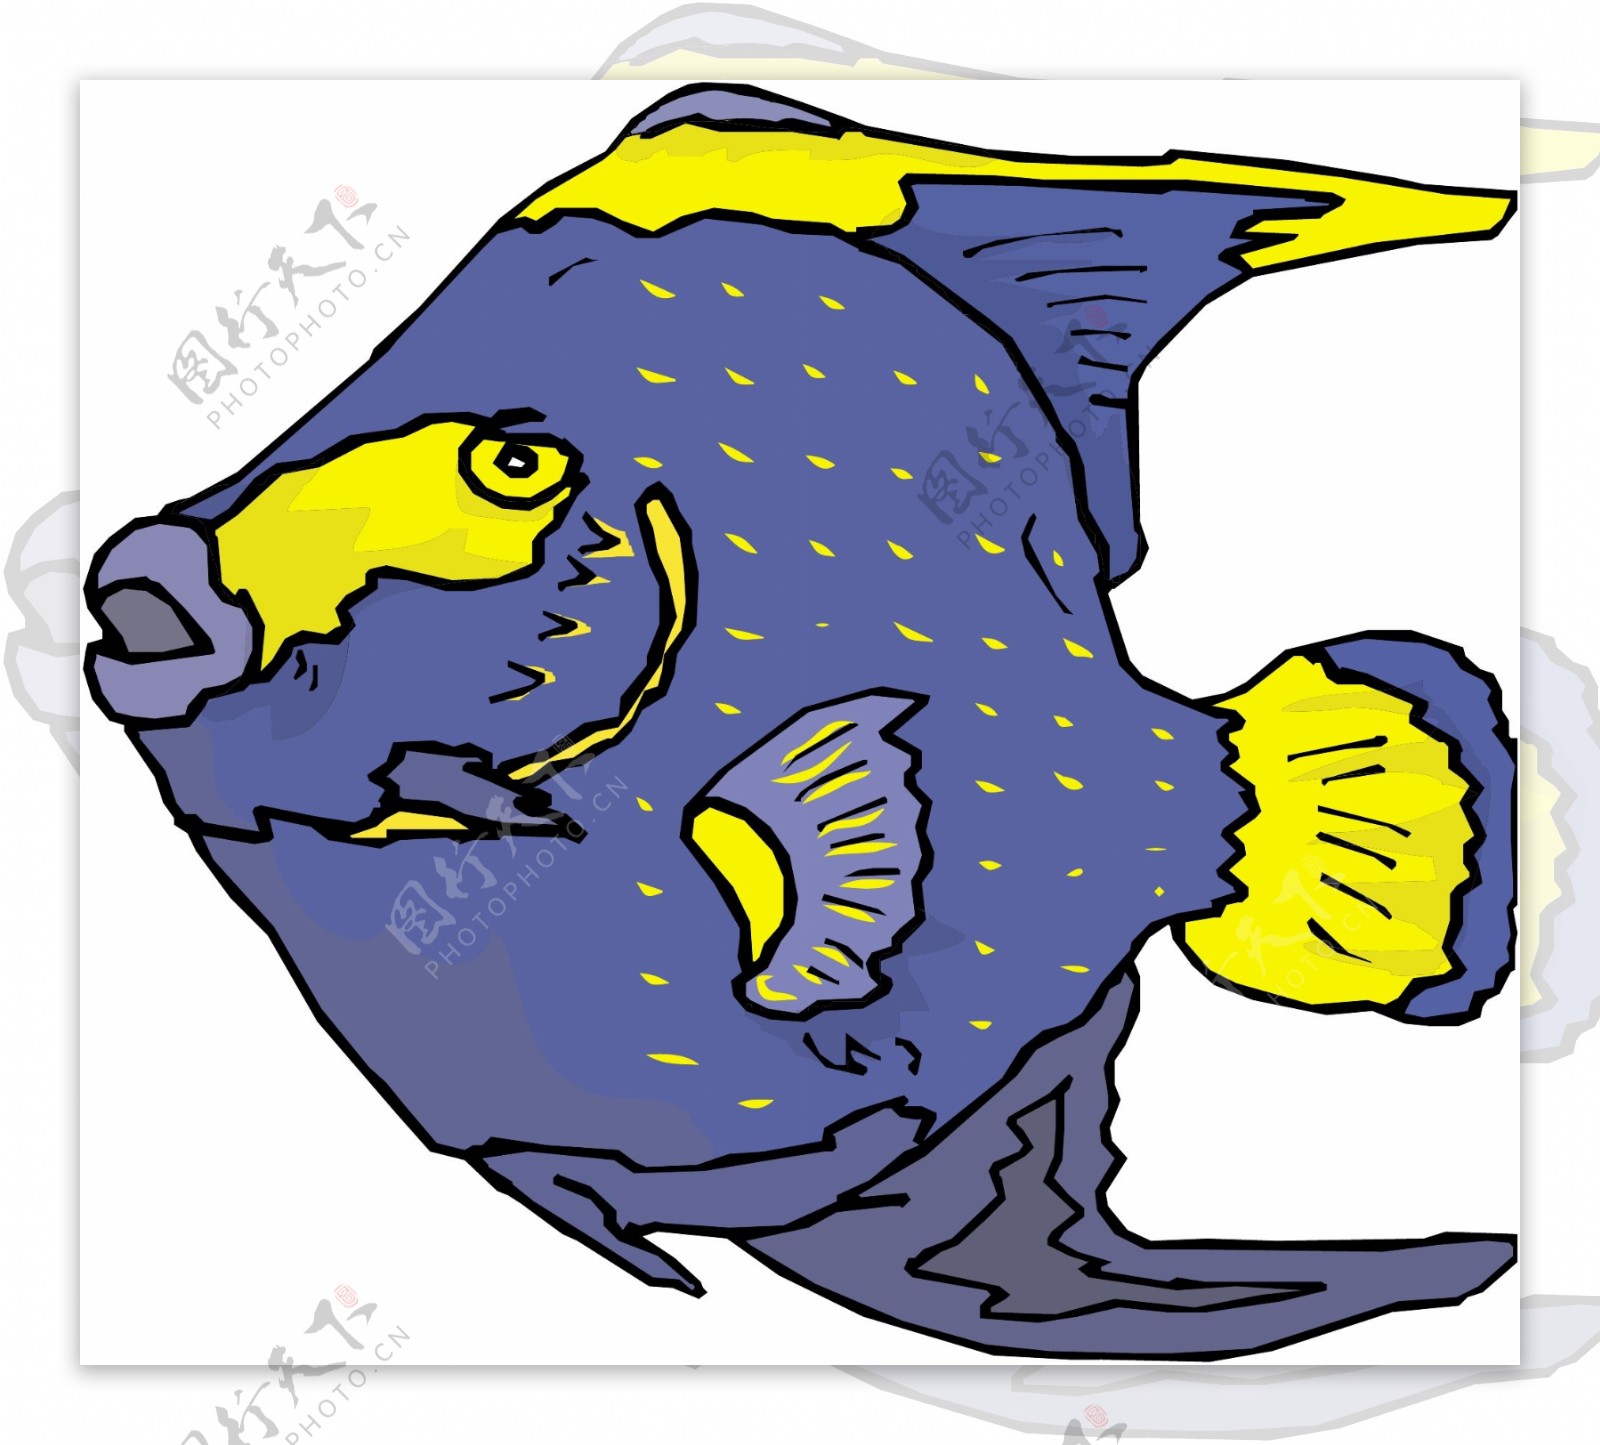 五彩小鱼水生动物矢量素材EPS格式0433